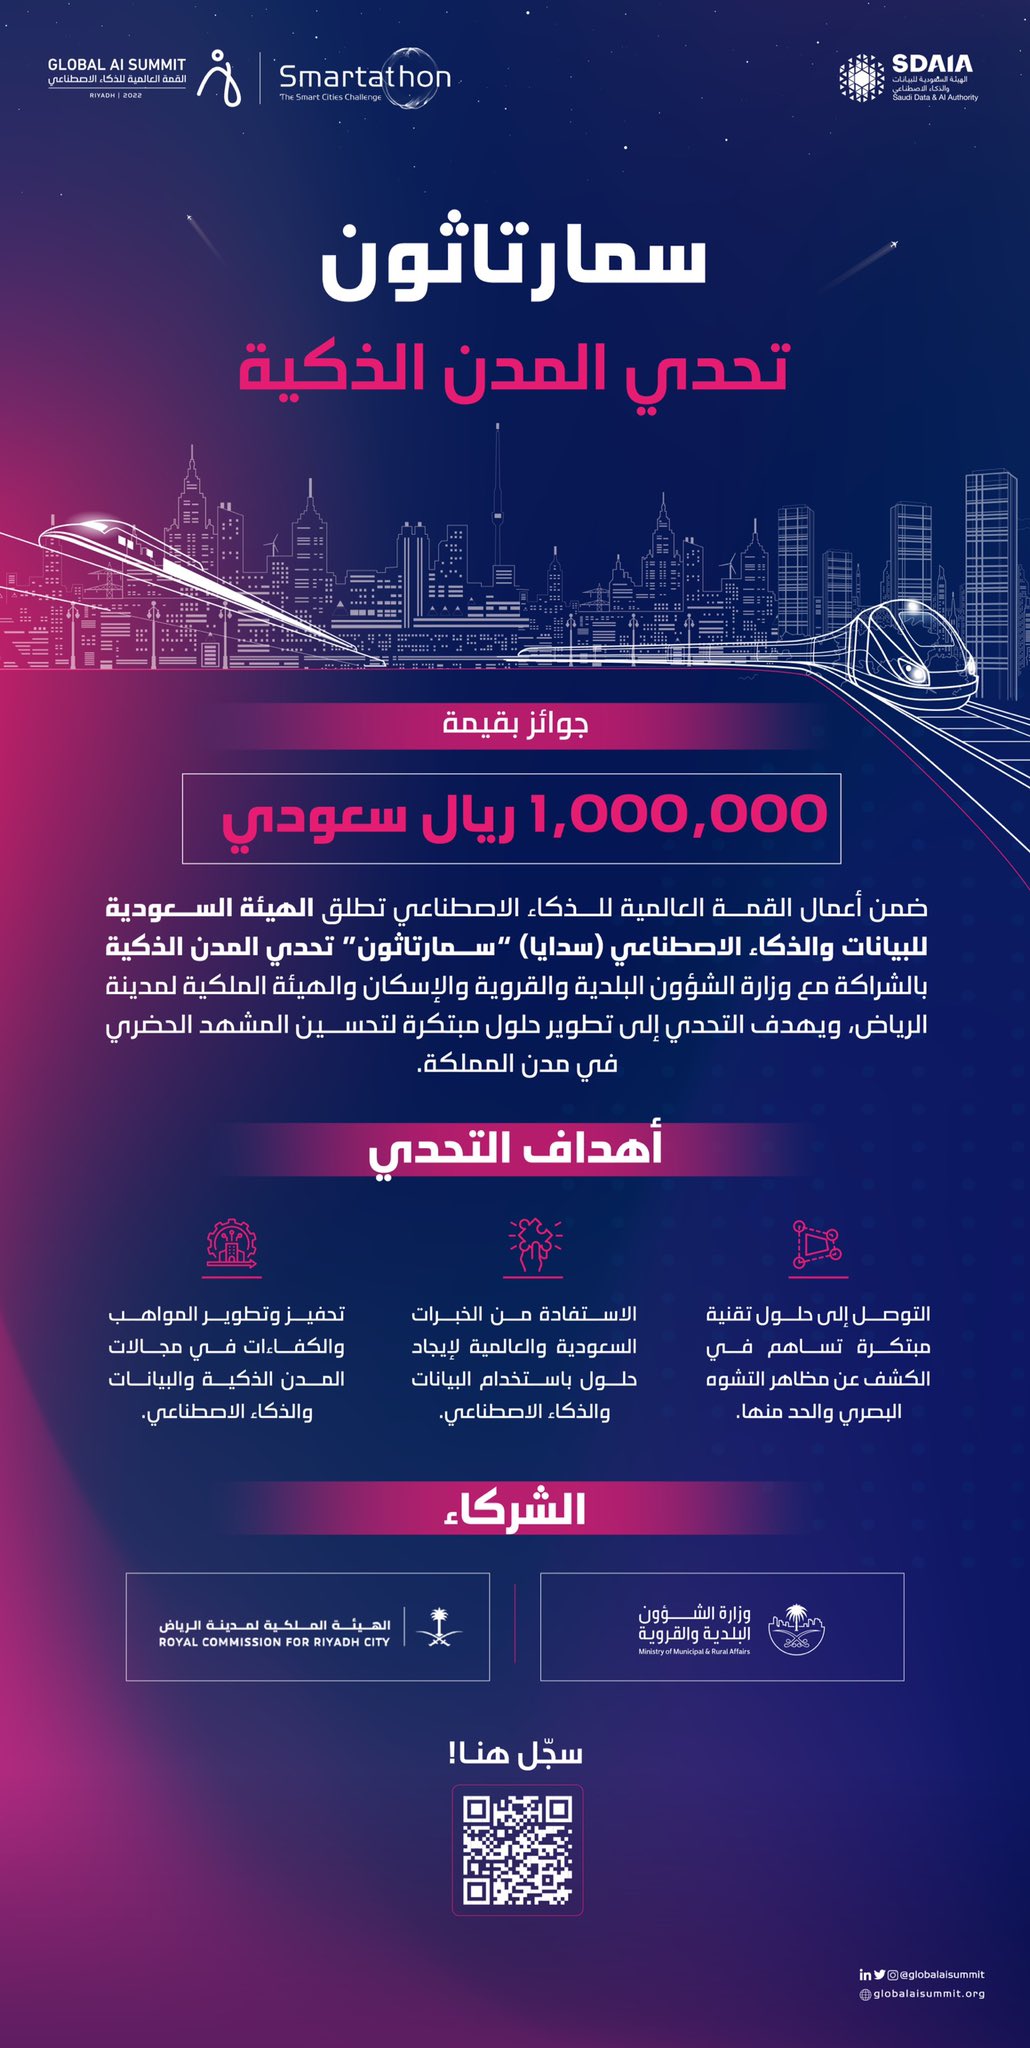 لليوم الثاني.. قمة الذكاء الاصطناعي في الرياض تواصل رسم المستقبل 